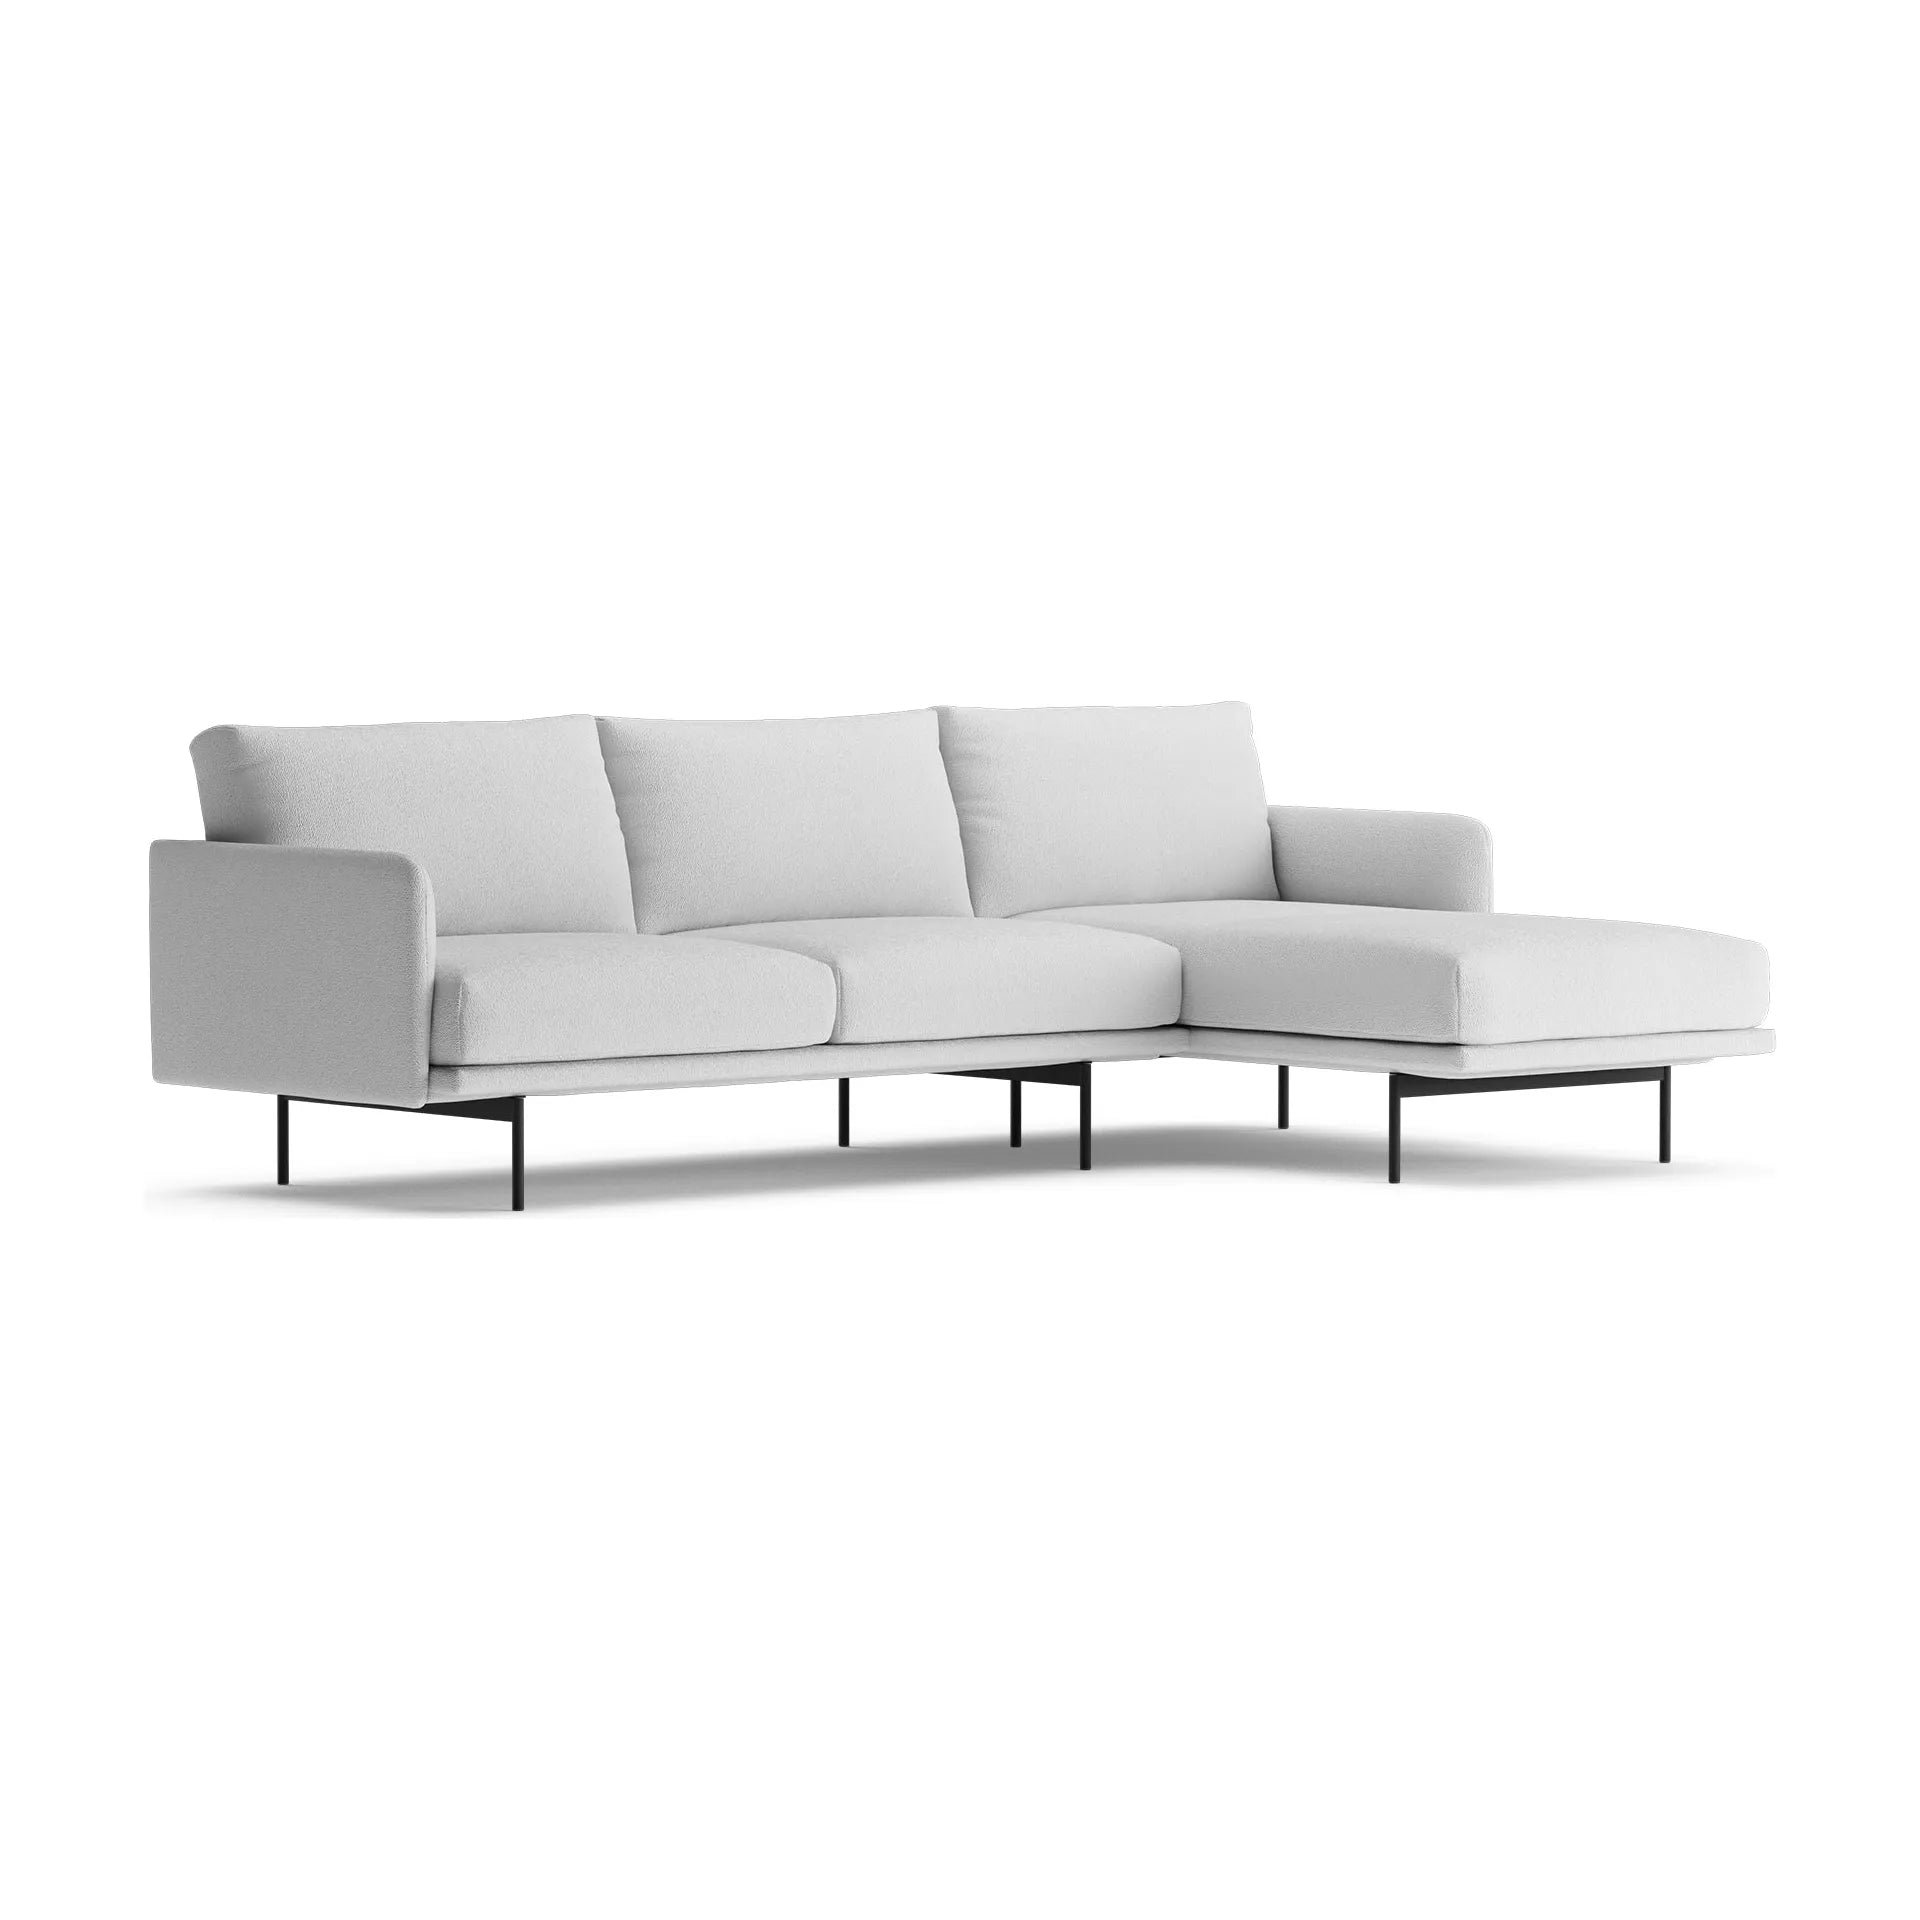 UMA kampinė sofa, pilka spalva, dešinė